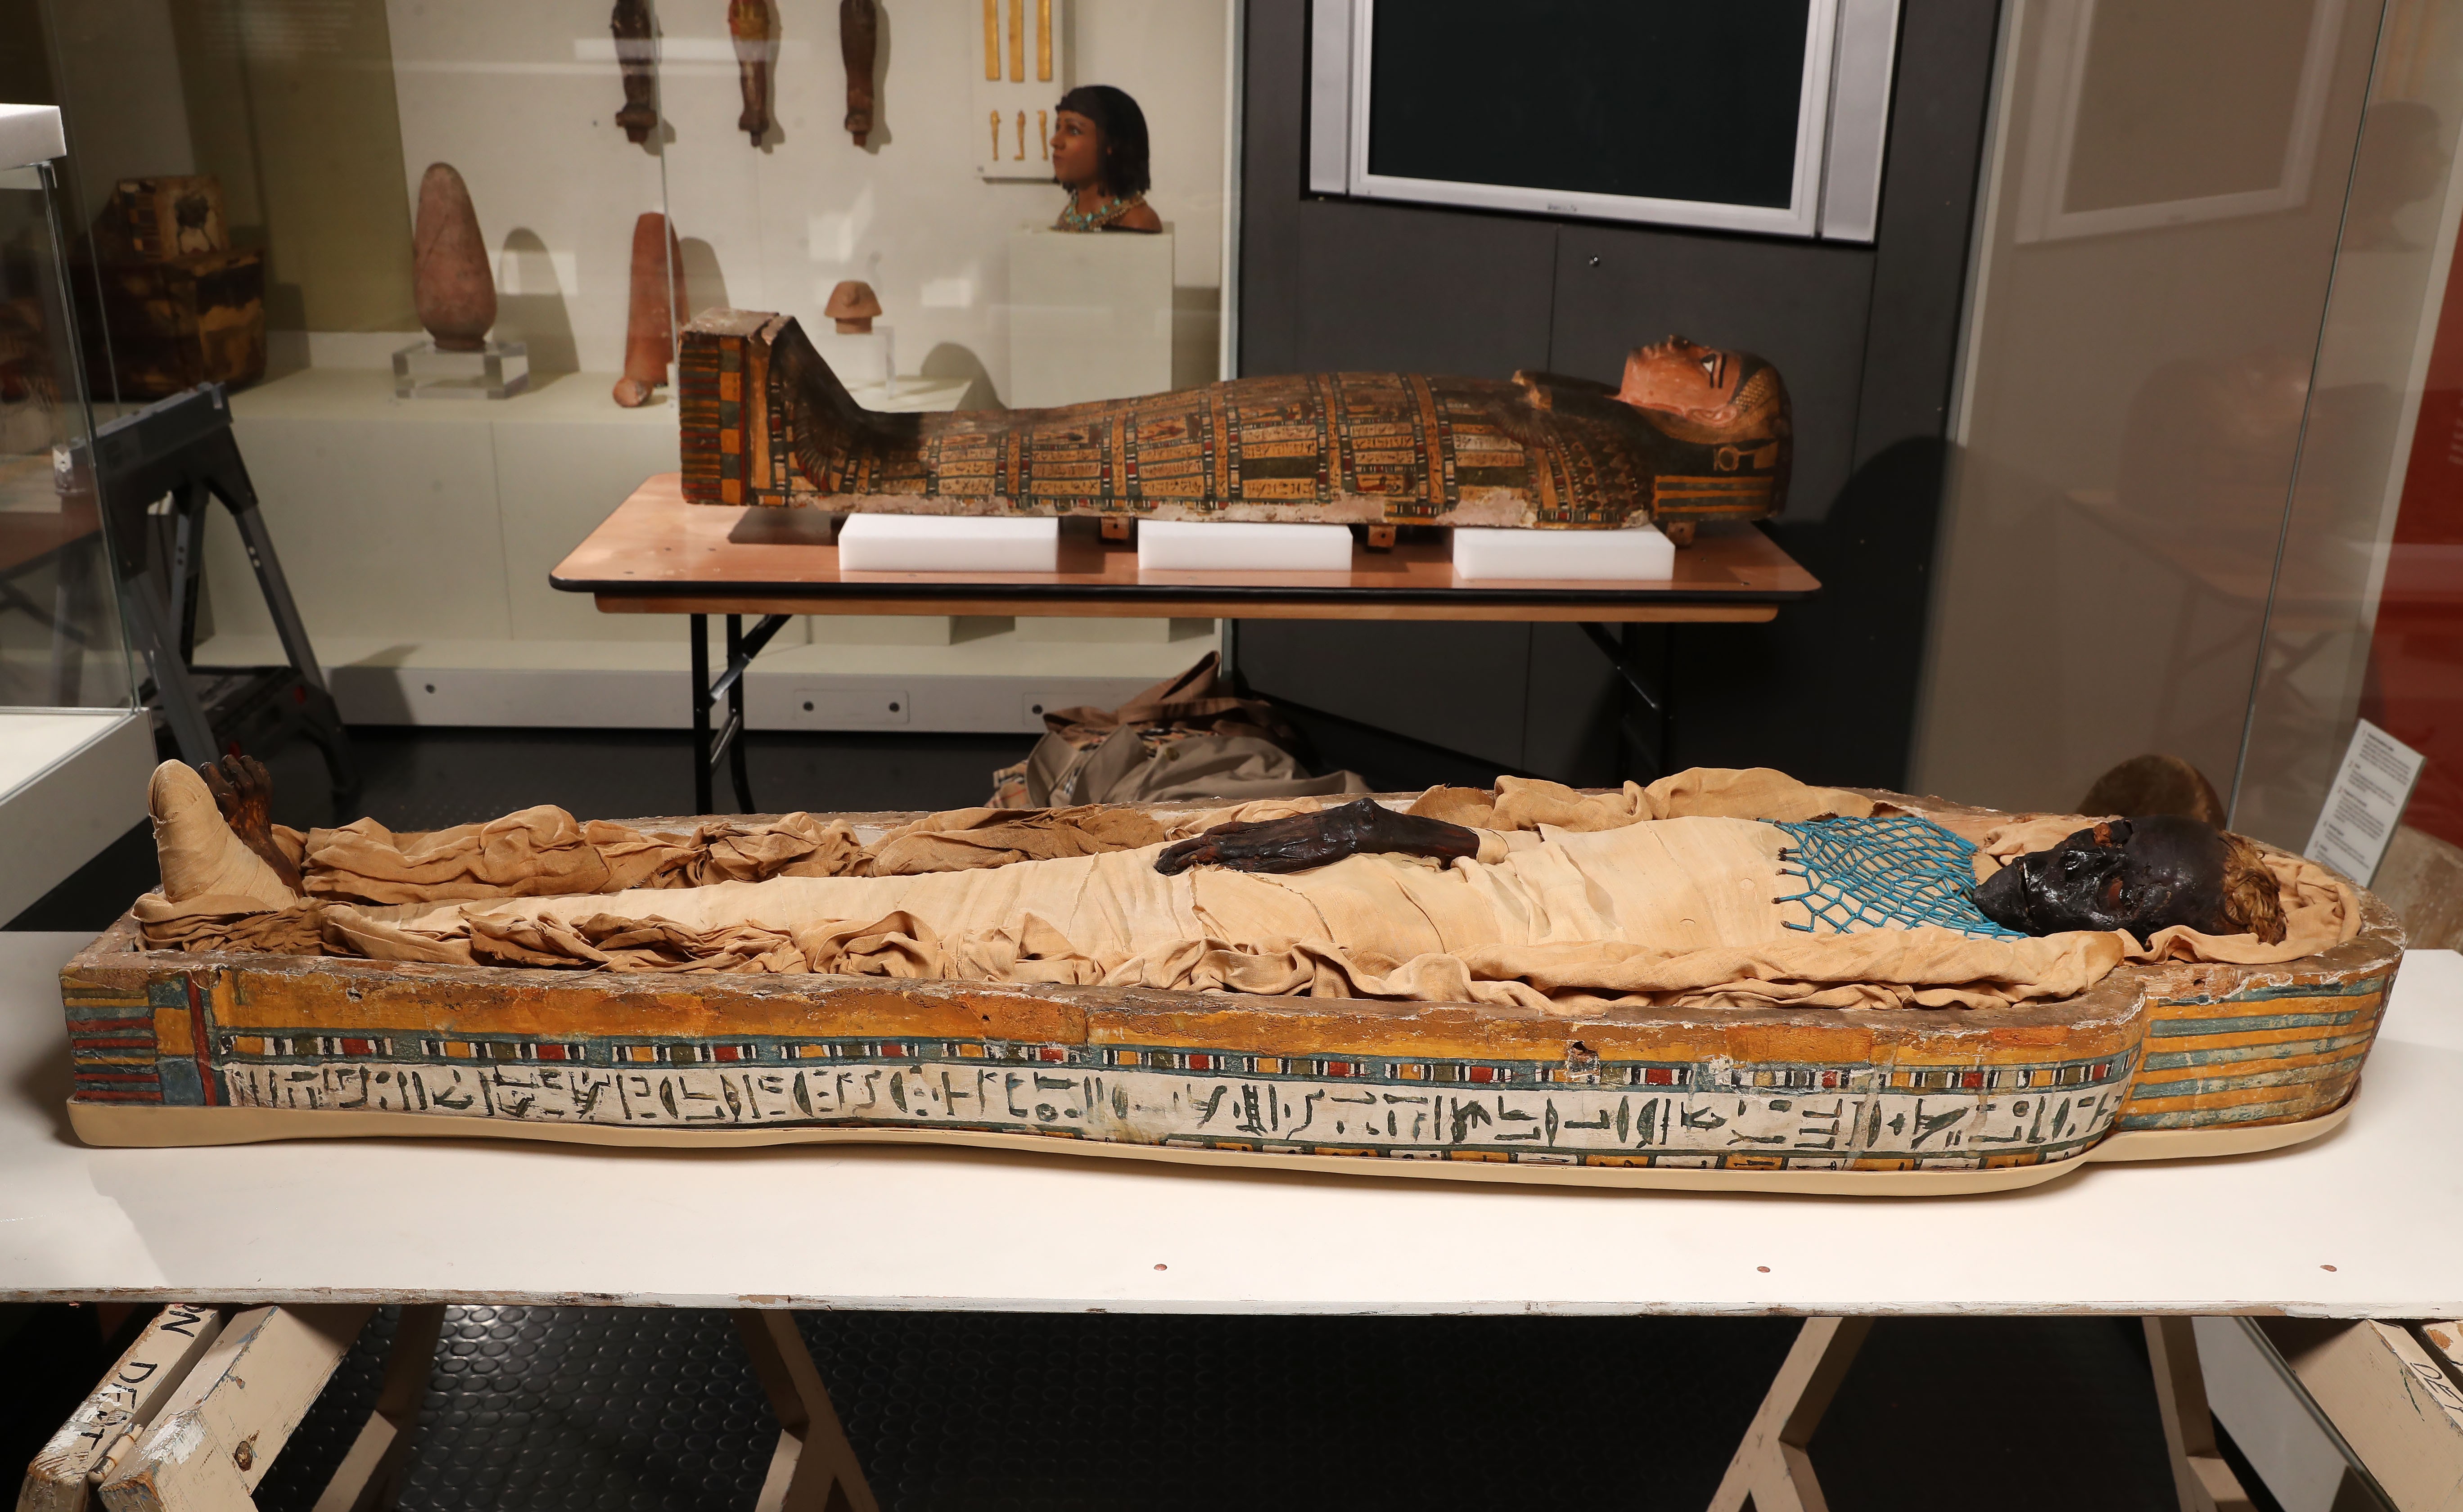 O corpo da jovem foi descoberto em 1835 na antiga cidade de Tebas, atual Luxor, no Egito, e desde então foi estudado diversas vezes, permanecendo exposto no Museu de Ulster, na Irlanda do Norte (Foto: Reprodução Universidade de Manchester)